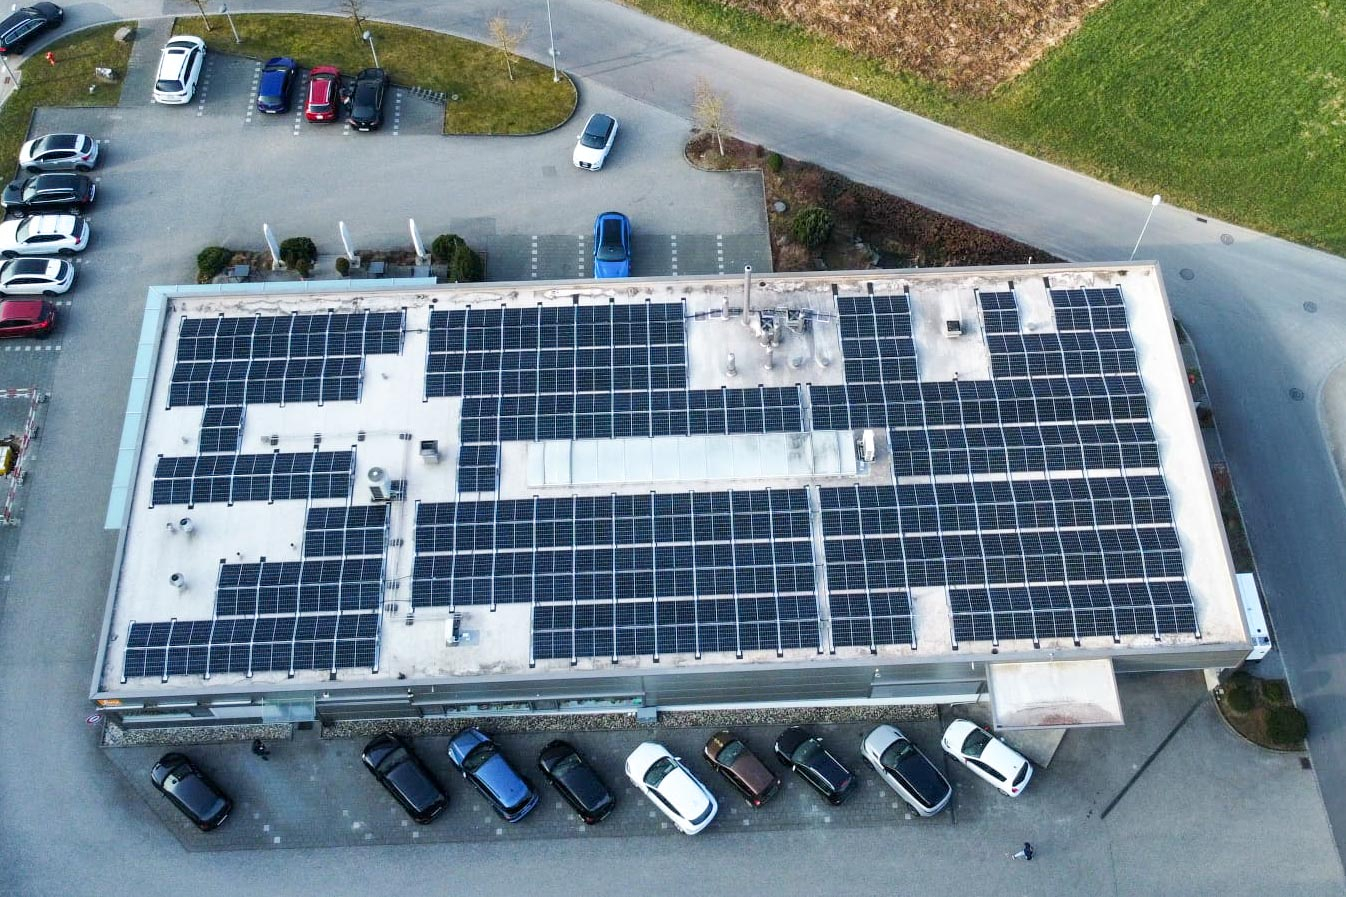 Dach unseres Produktionsstandorts in der Vogelperspektive mit Solaranlage